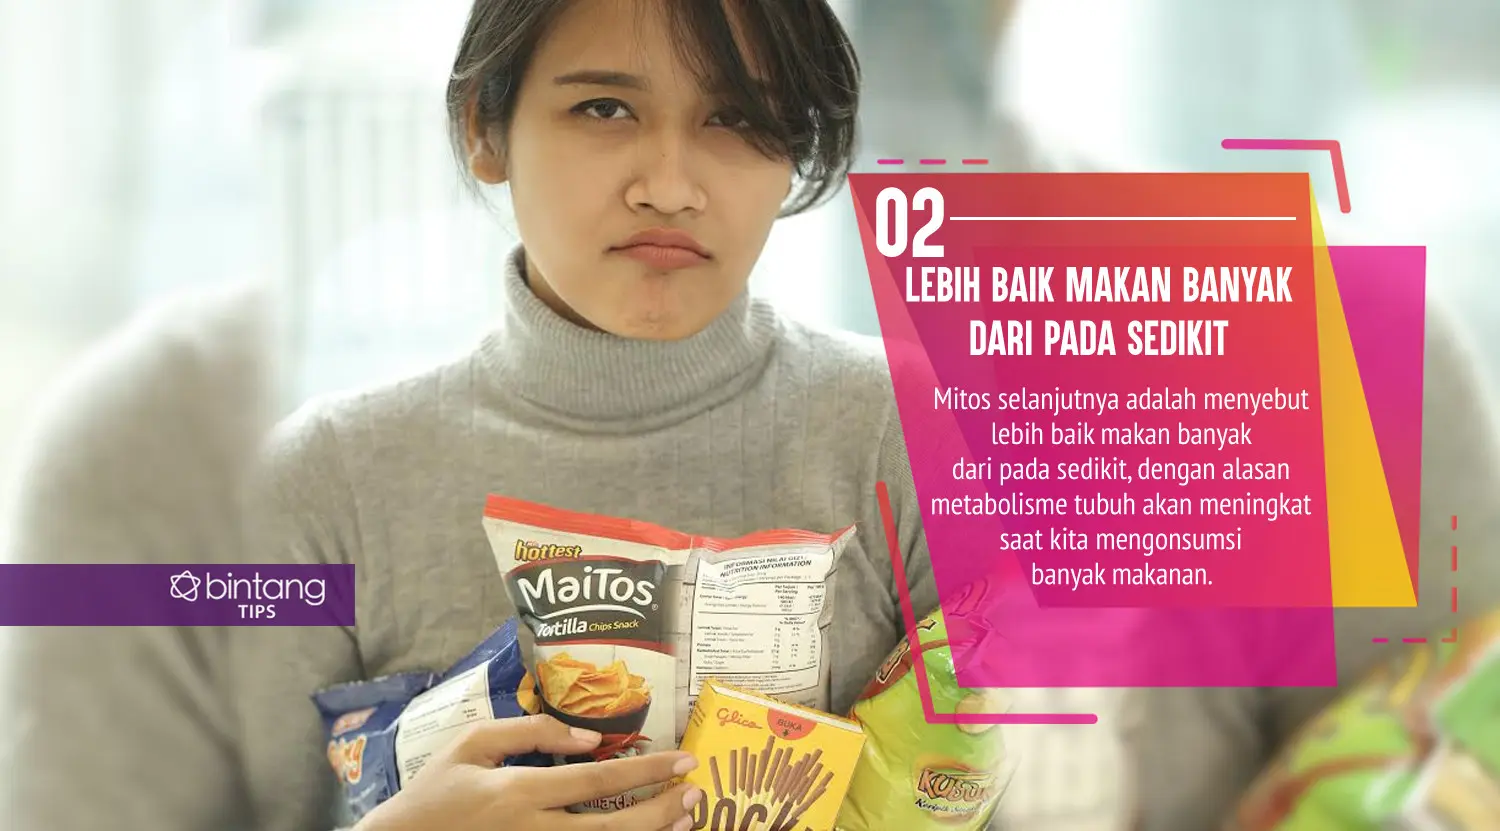 Mitos diet yang malah bikin kamu tambah gemuk. (Foto: Daniel Kampua, Digital Imaging: Nurman Abdul Hakim/Bintang.com)